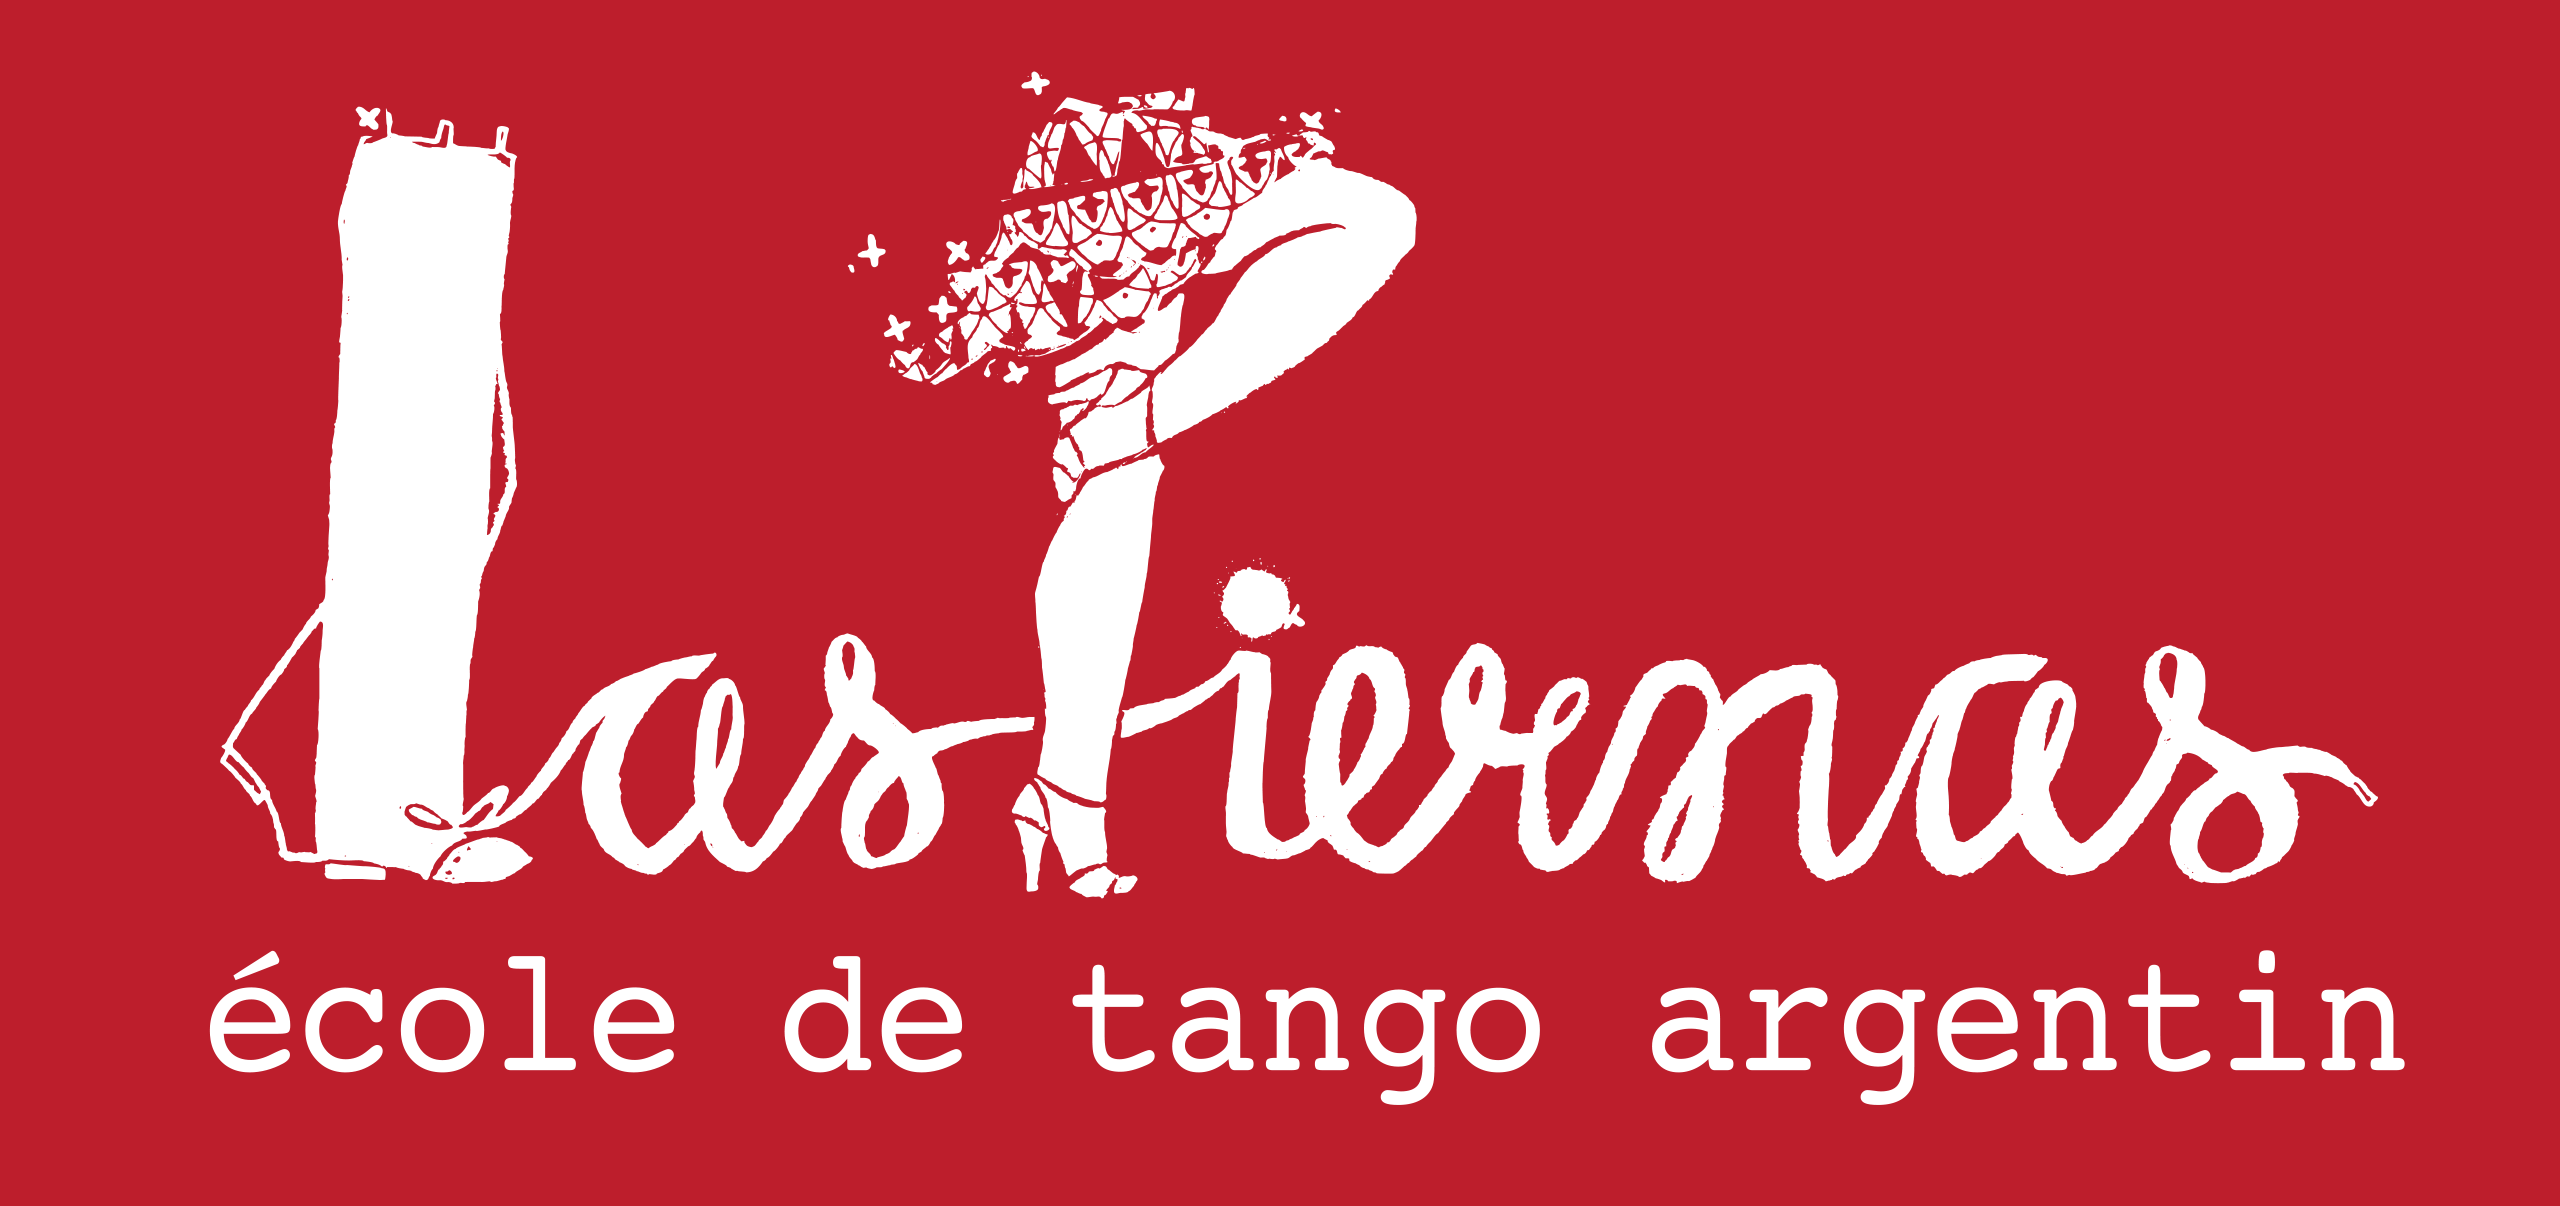 Votre école de tango argentin.